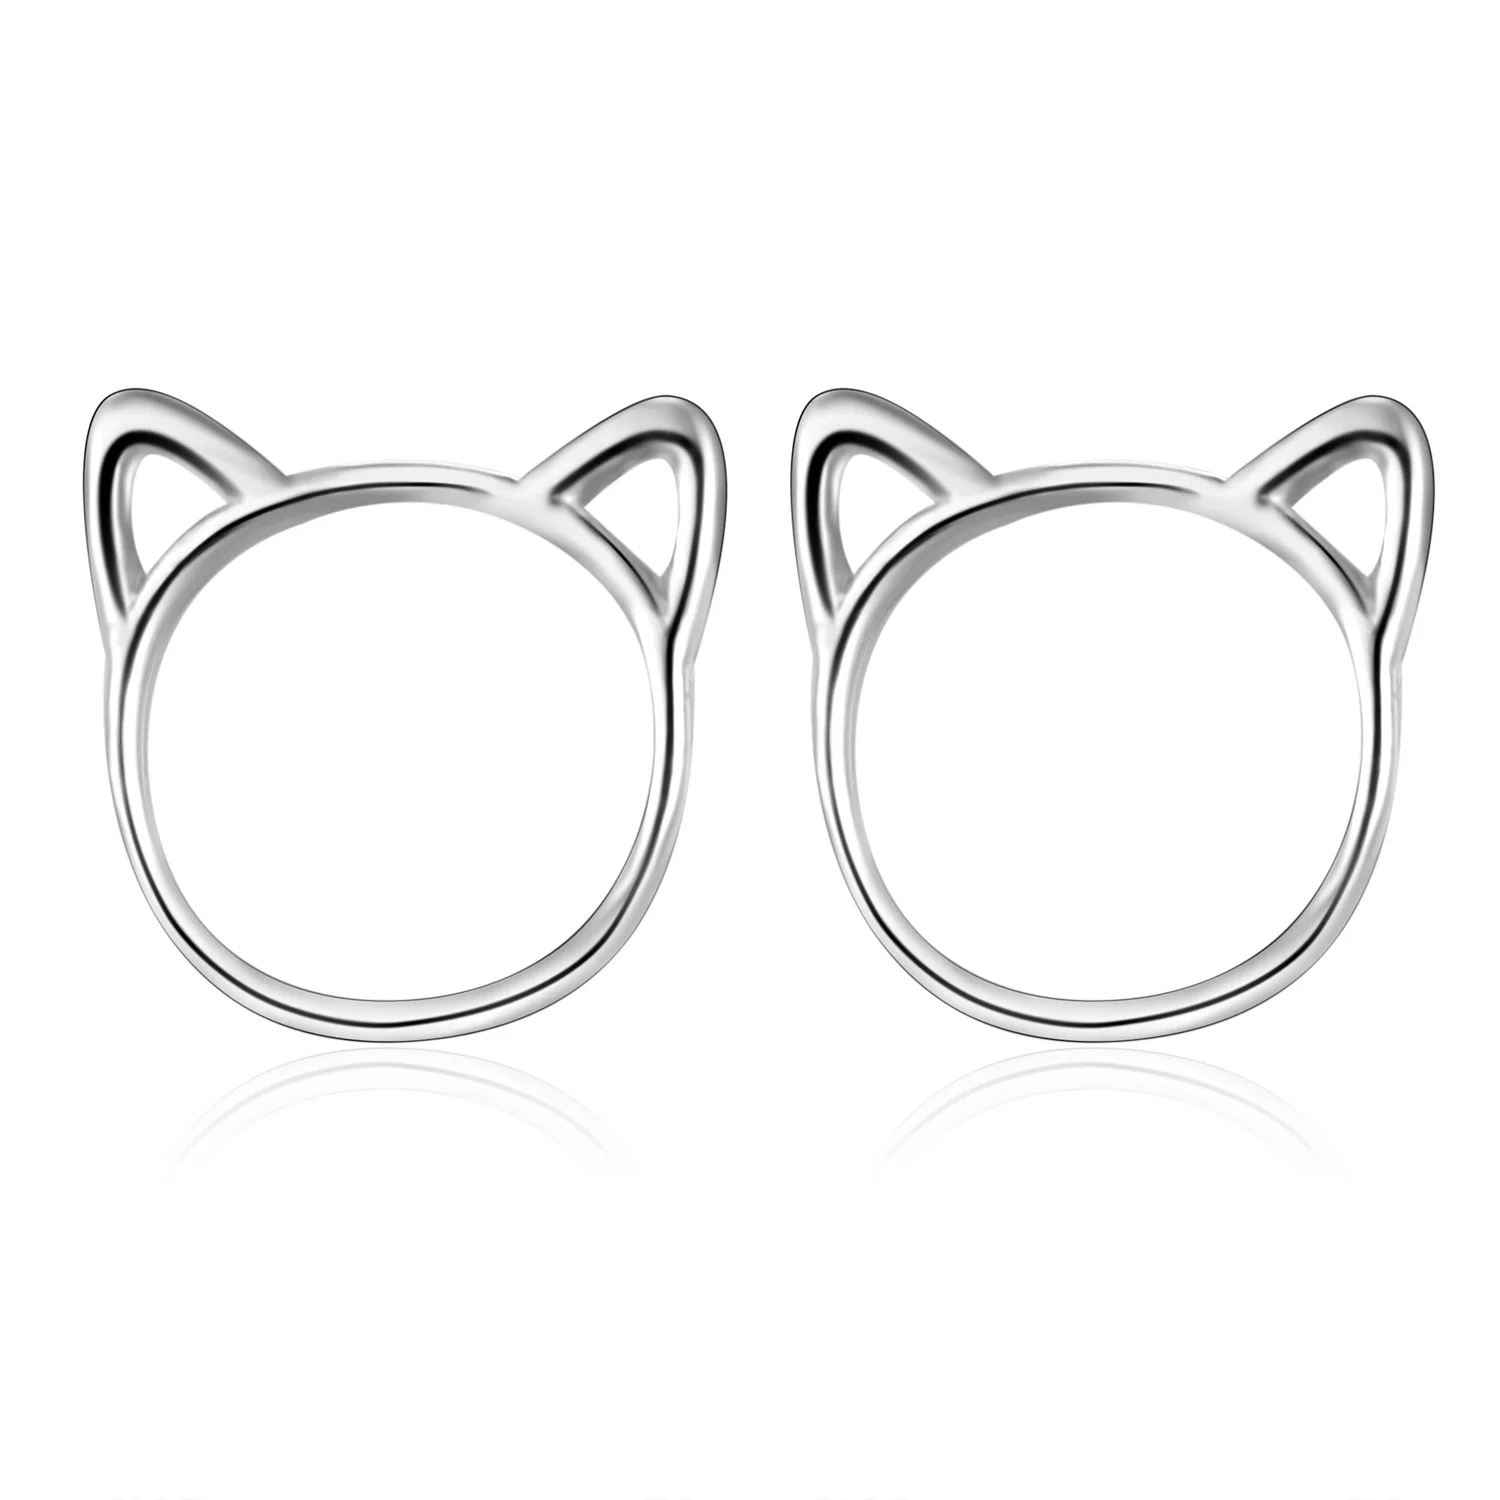 Rinhoo 1 пара модные популярные медные полые кошачьи формы циркониевые серьги-гвоздики со стразами женские модные изящный драгоценный подарок - Окраска металла: ER18Y0887